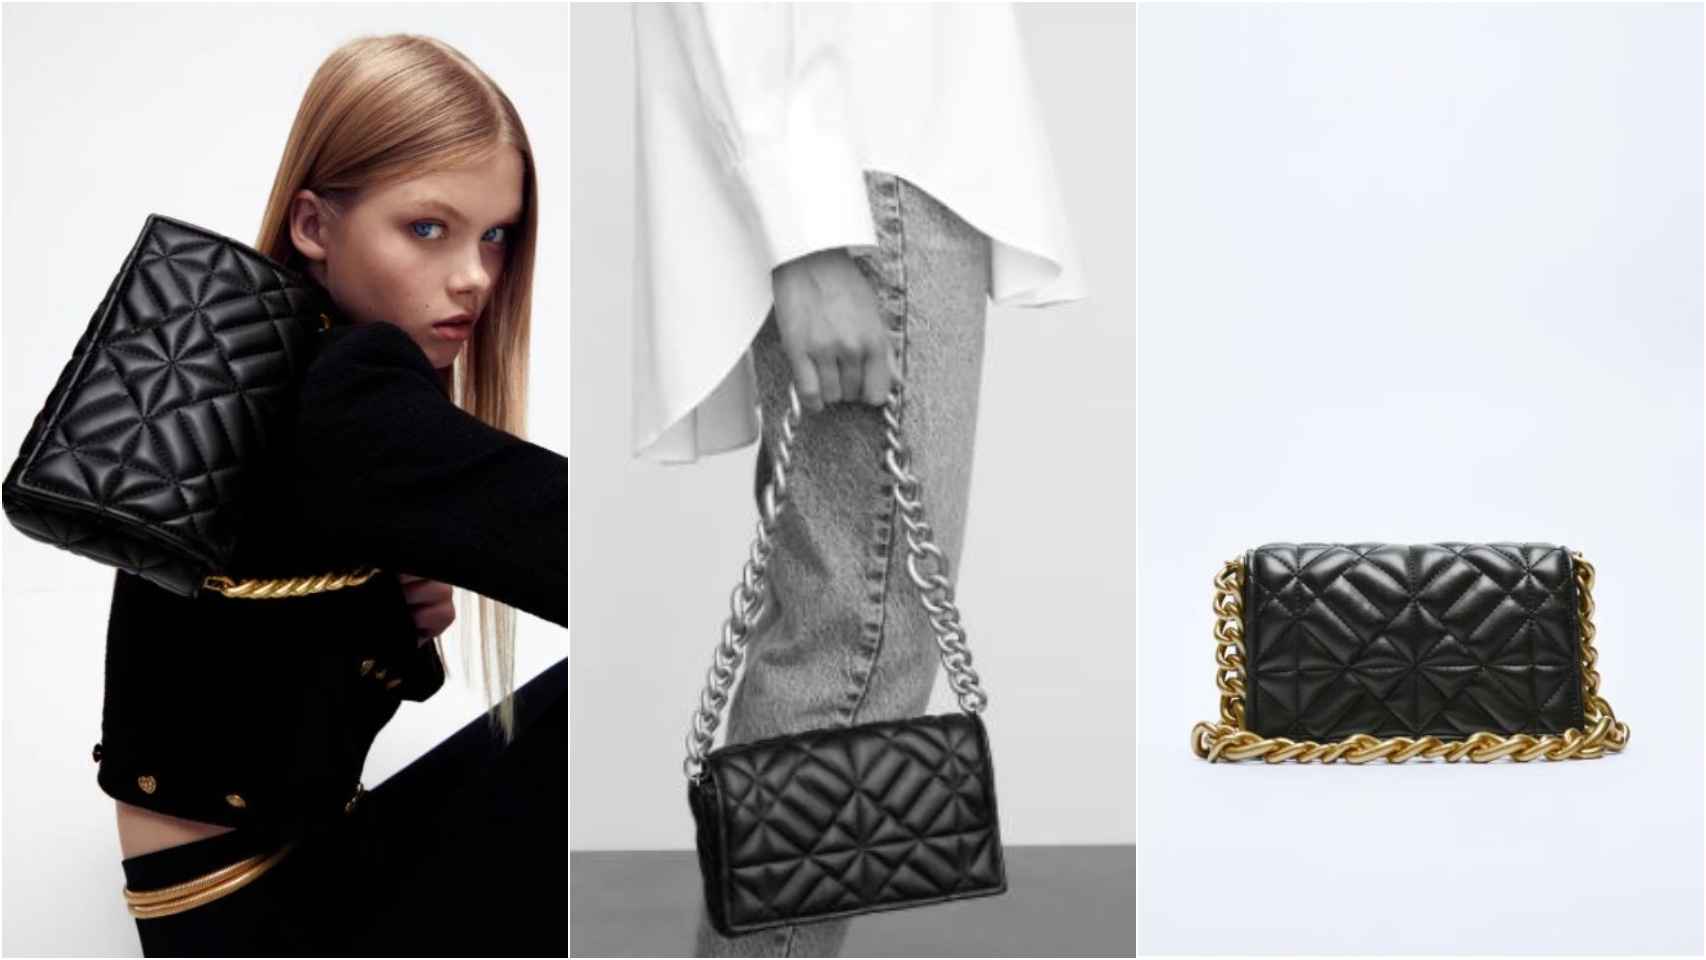 Modelo con bolso de Zara que recuerda al 2.55 de Chanel. Su precio, 22,95 euros.